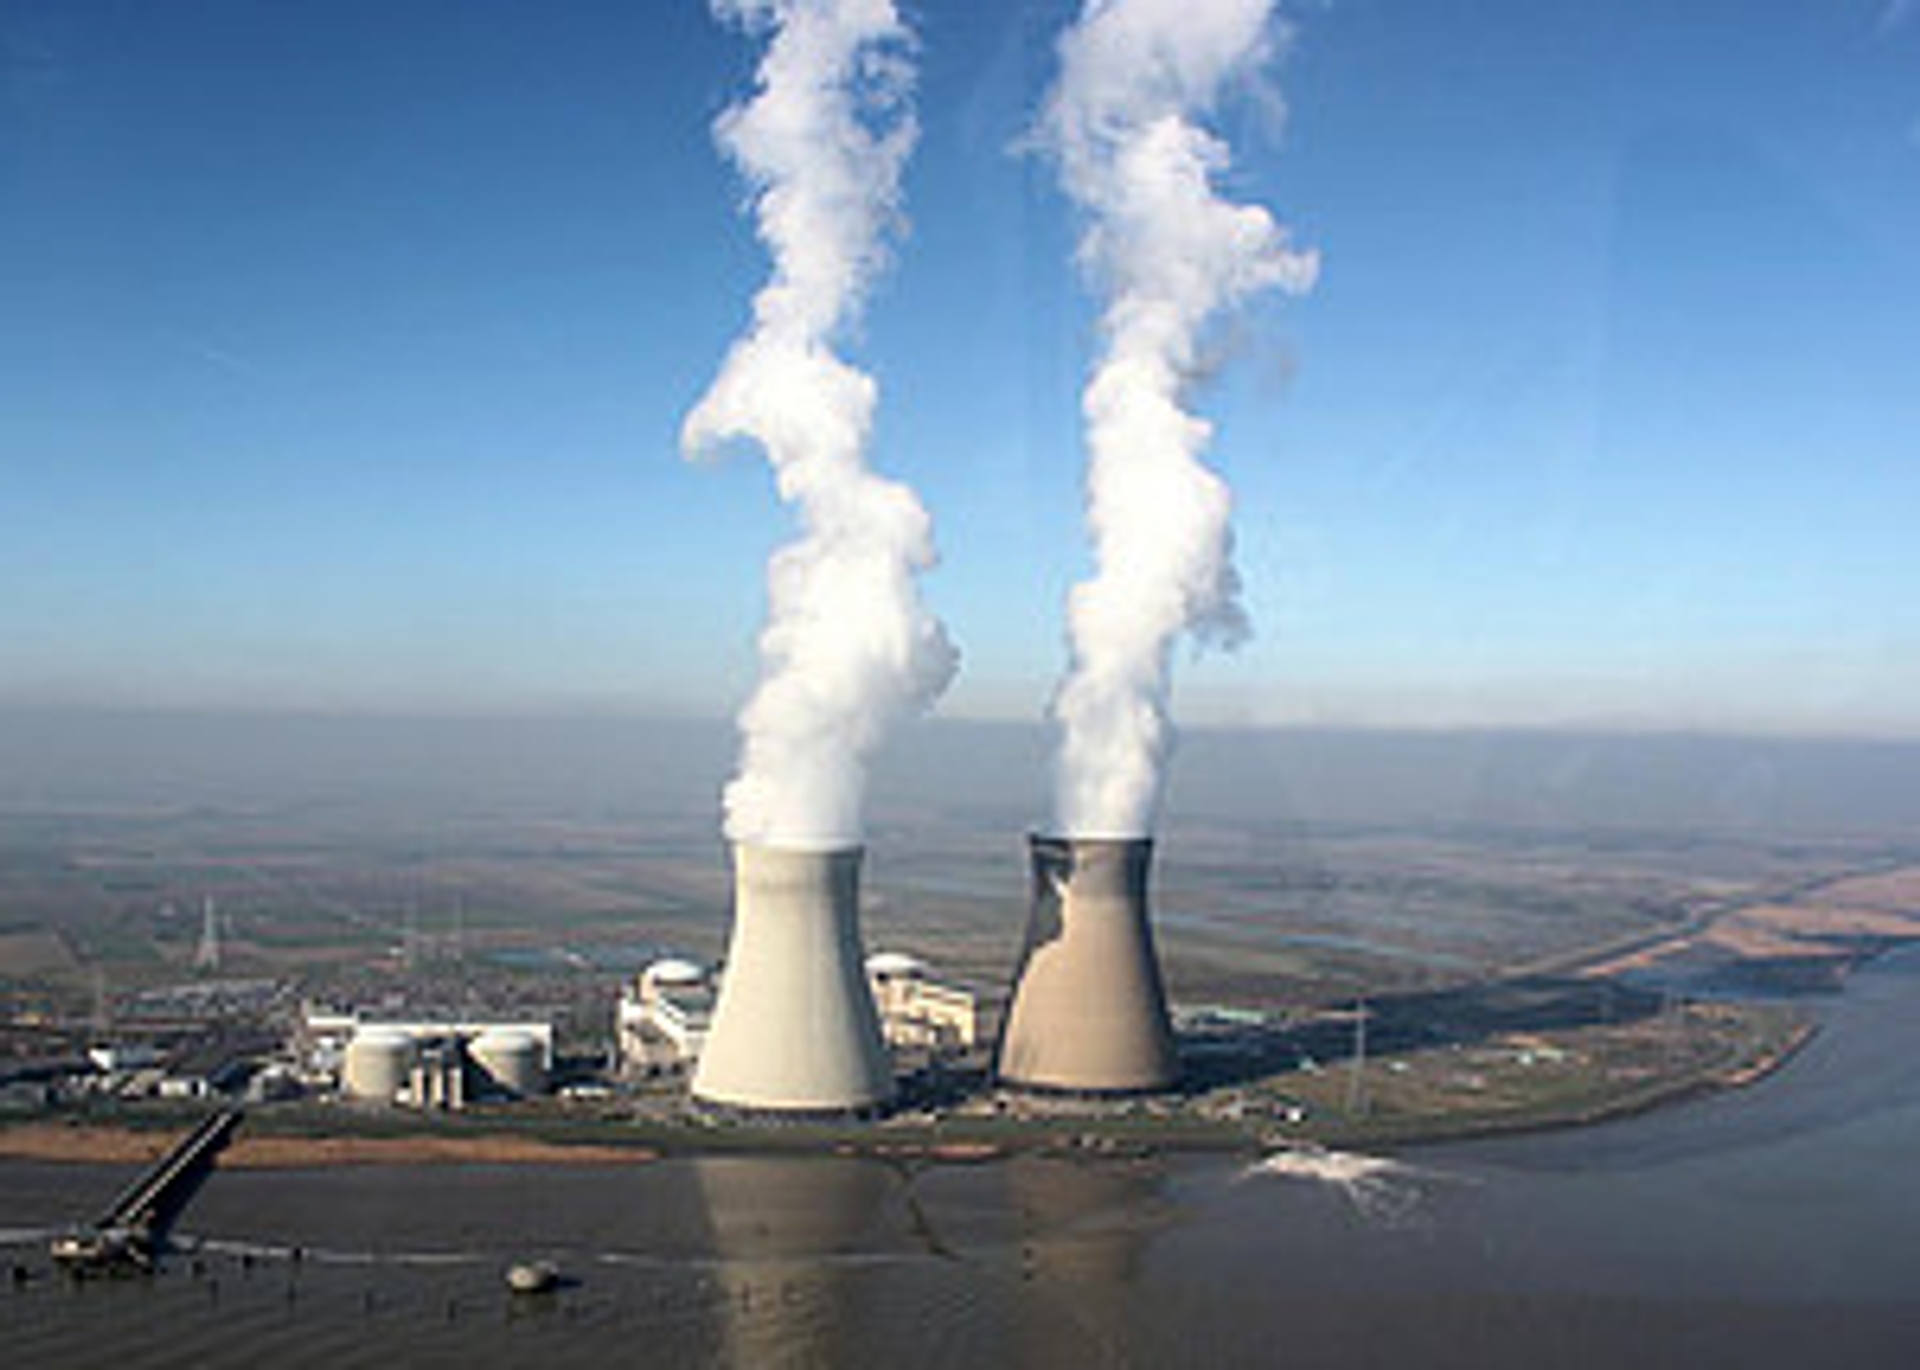 RTEmagicC_kernenergie300.JPG